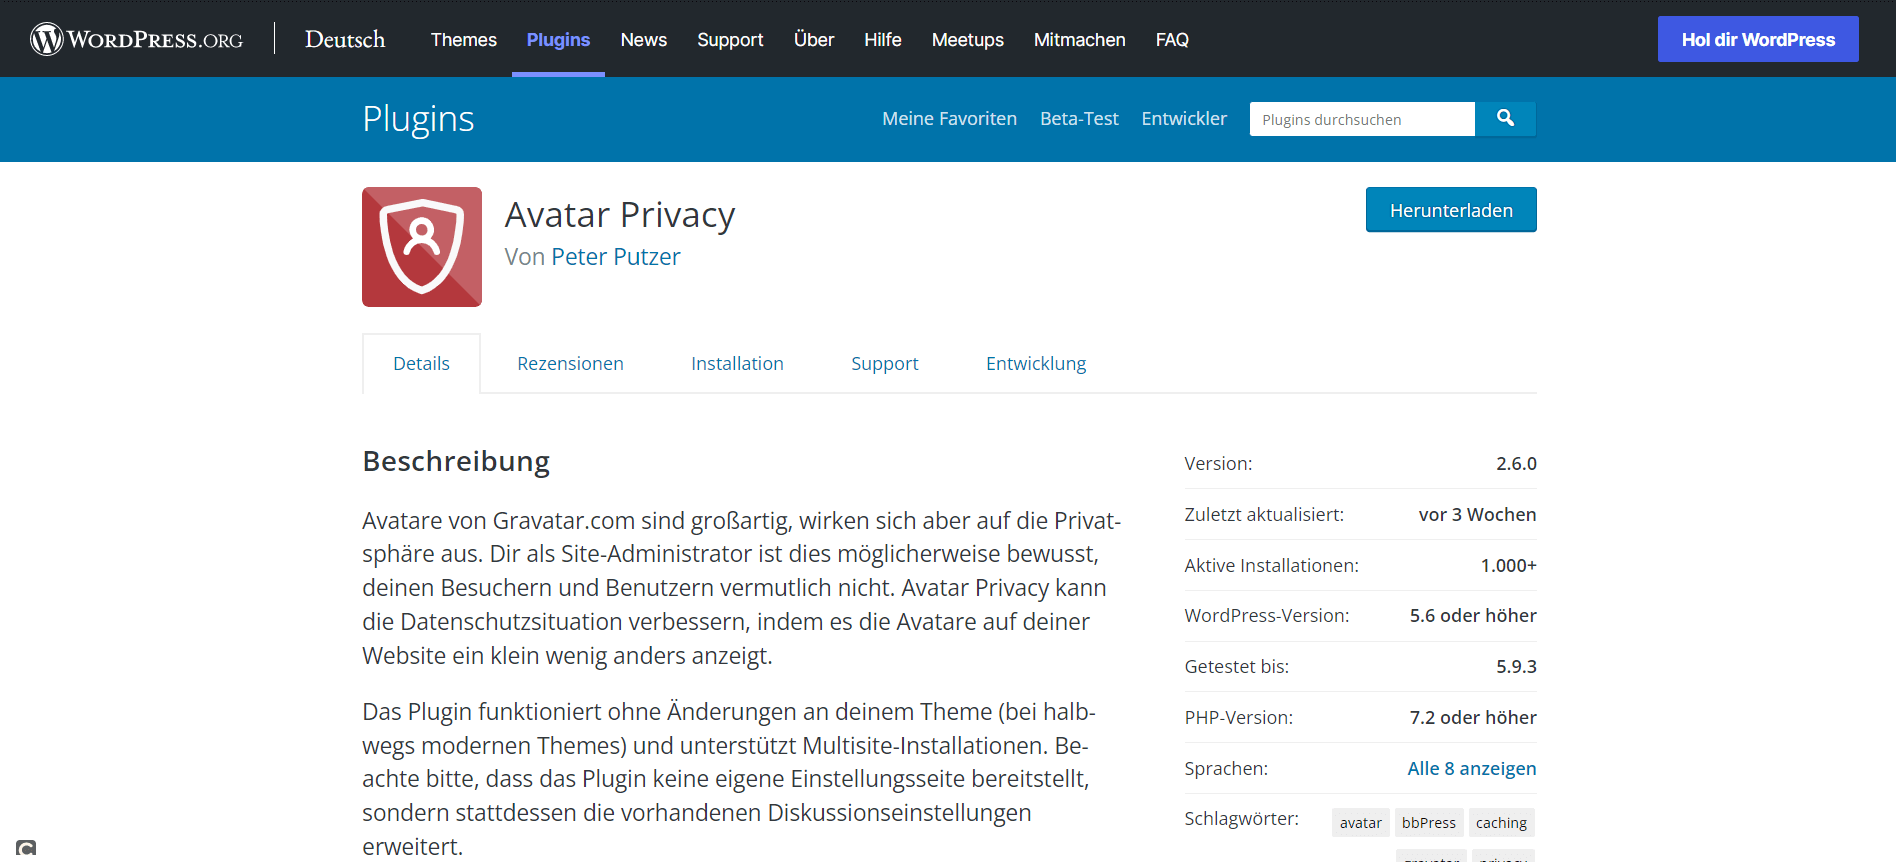 Startseite des WordPress-Plugins Avatar Privacy